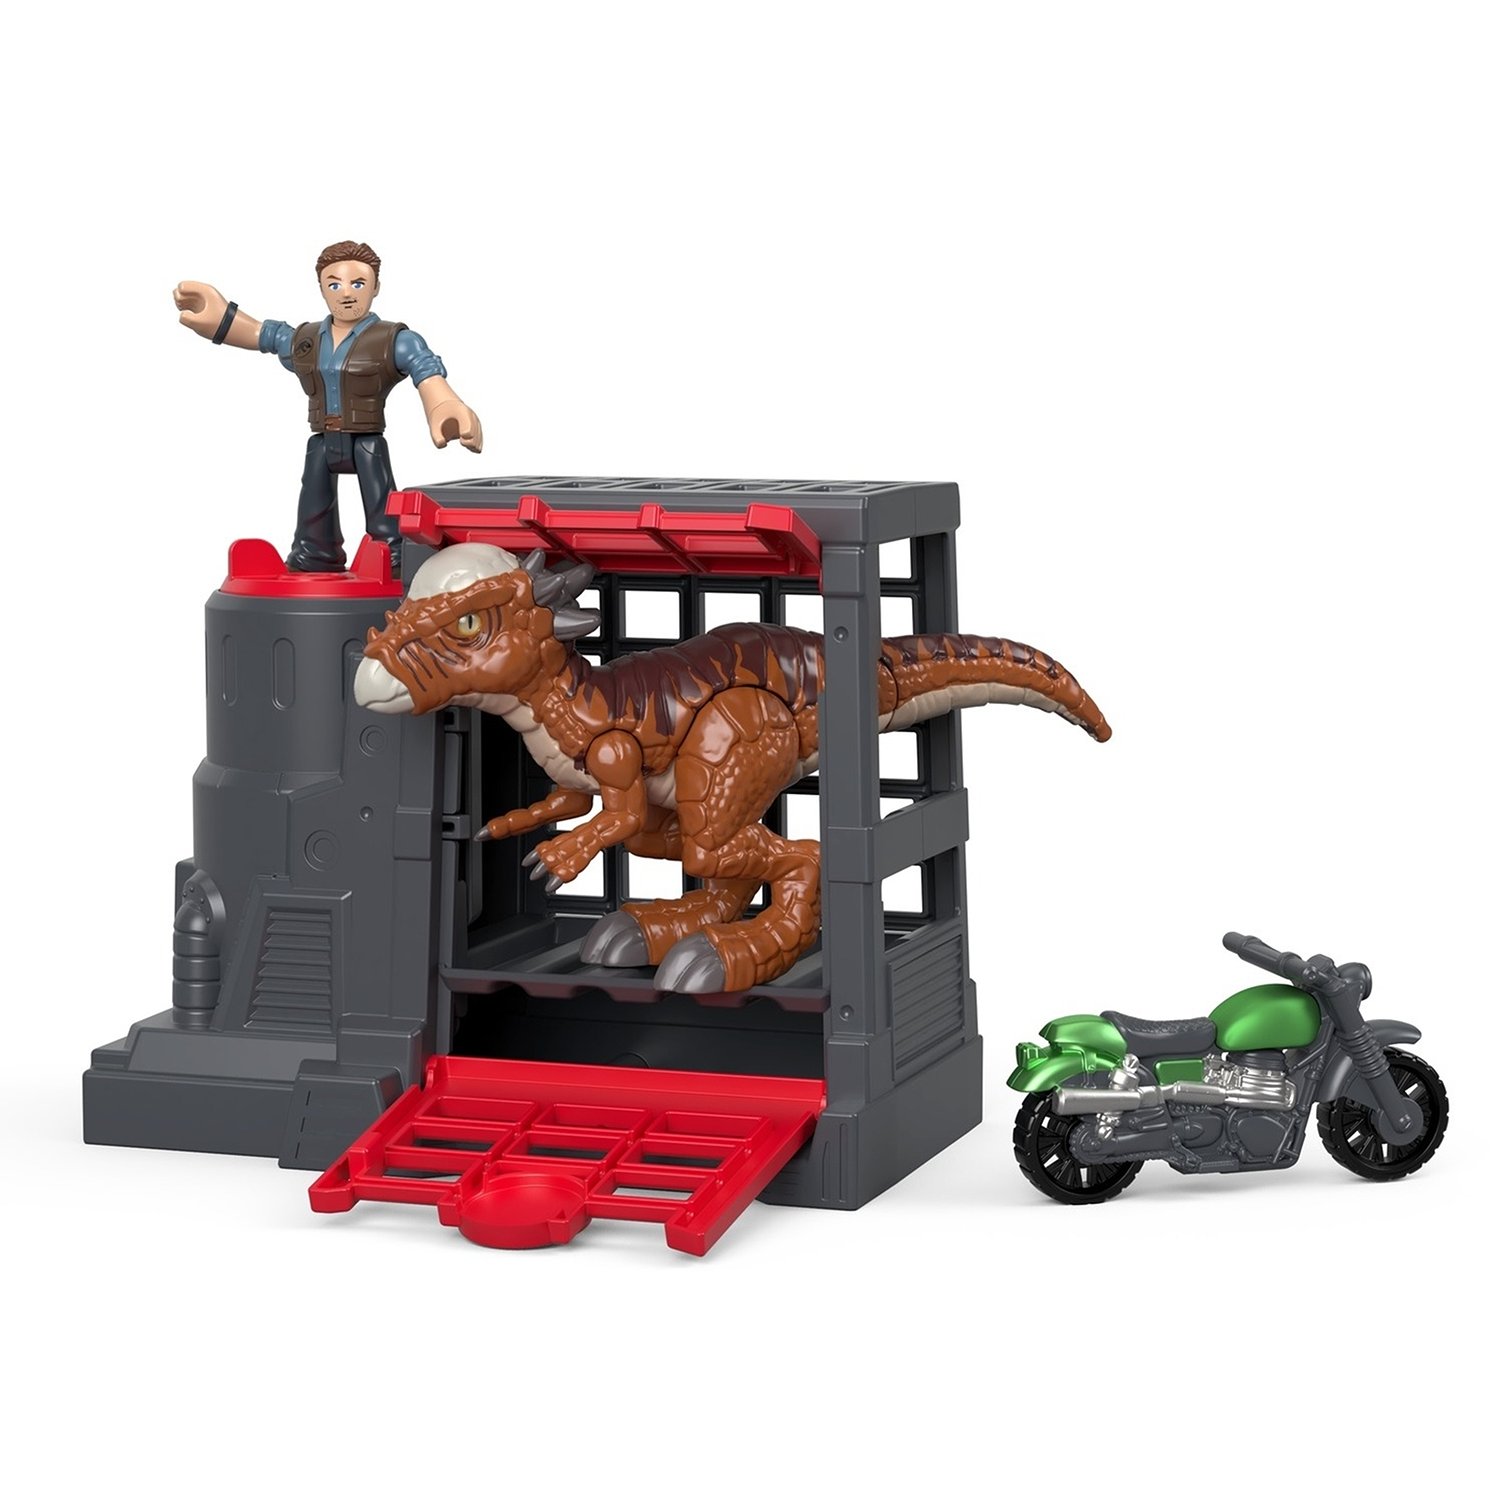 Купить Игровой набор Mattel Jurassic World фигурки героев и динозавров FMX88 в ассортименте,